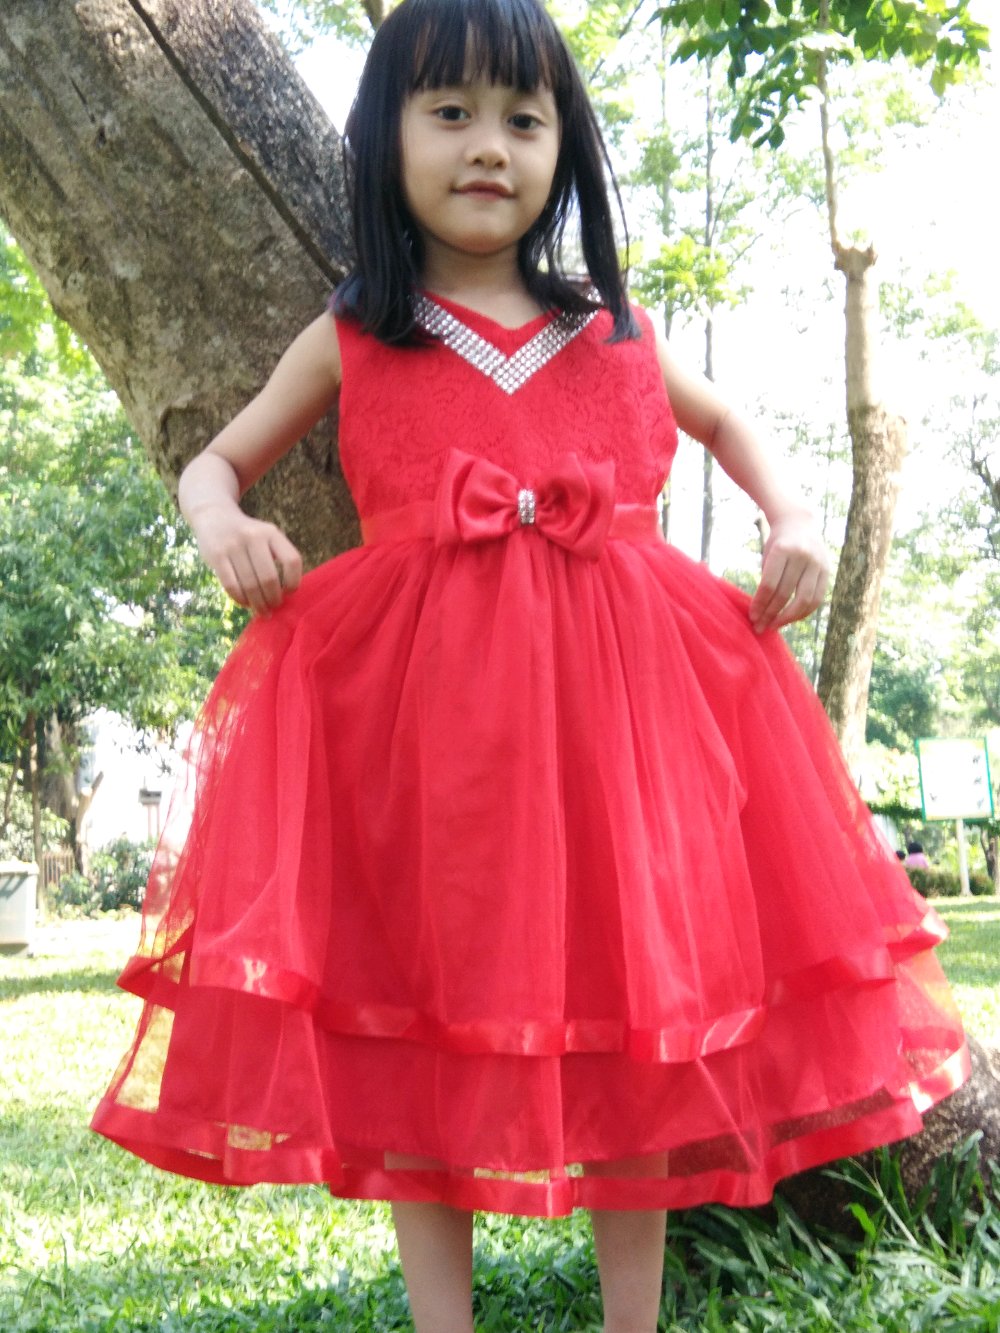  Model  Baju Gaun  Pesta Anak  Bahan Brokat  Updatemodelbaju